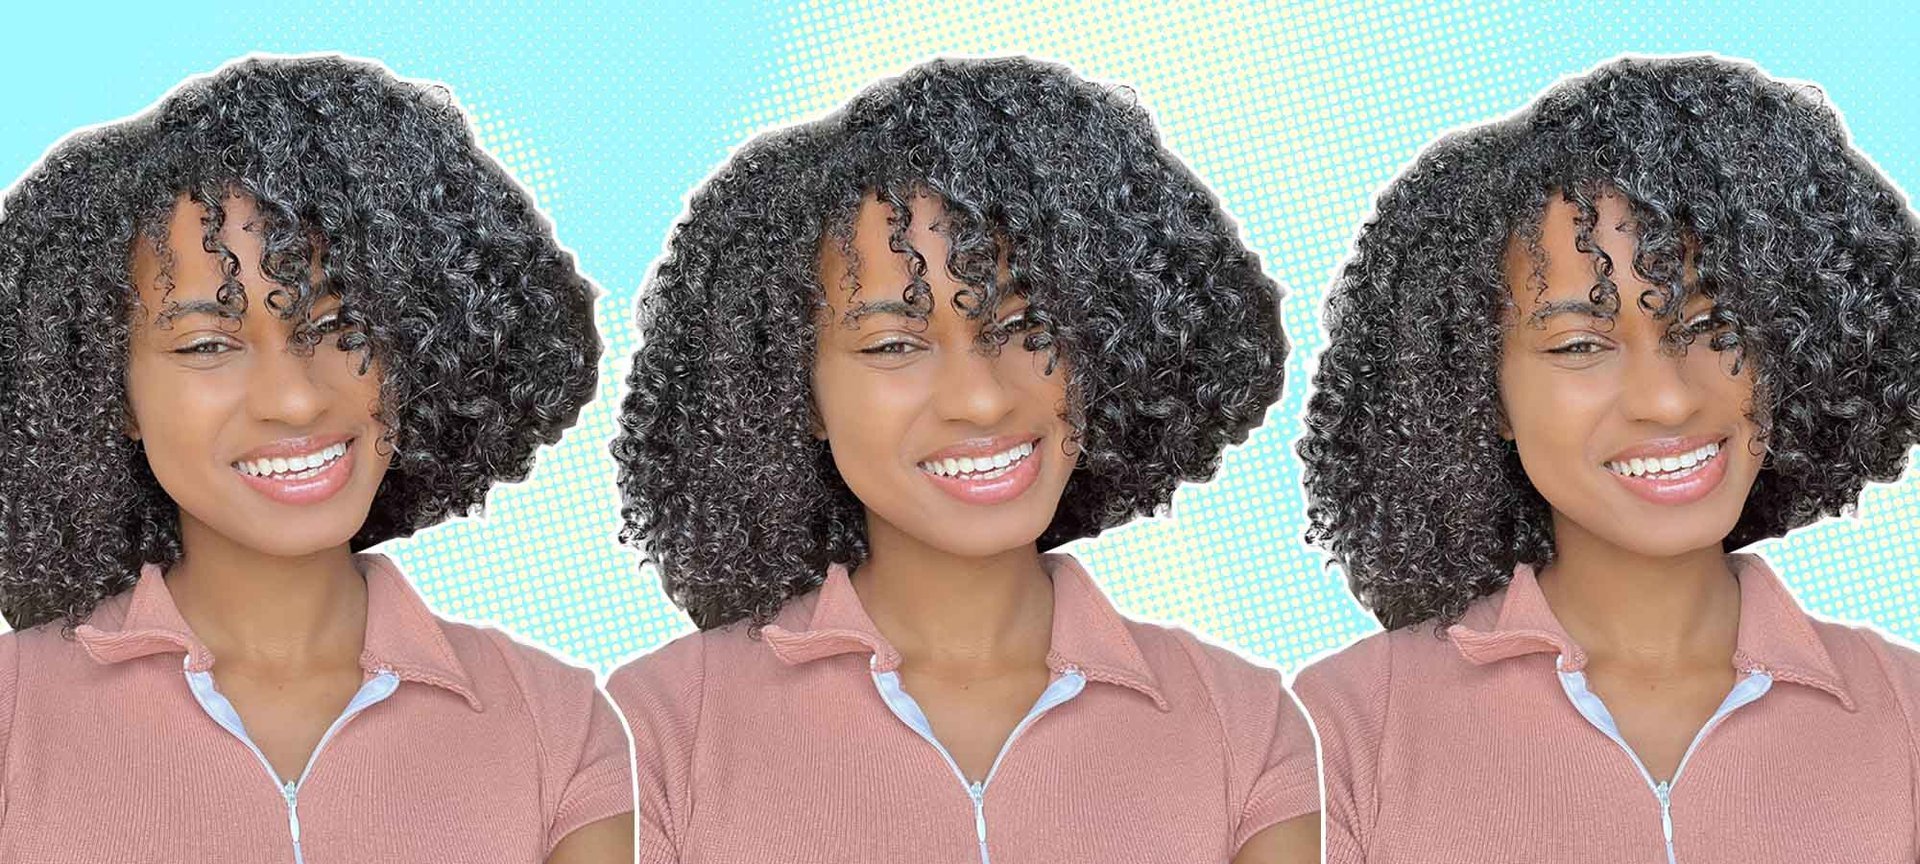 How to Detangle Curly Hair - L'Oréal Paris